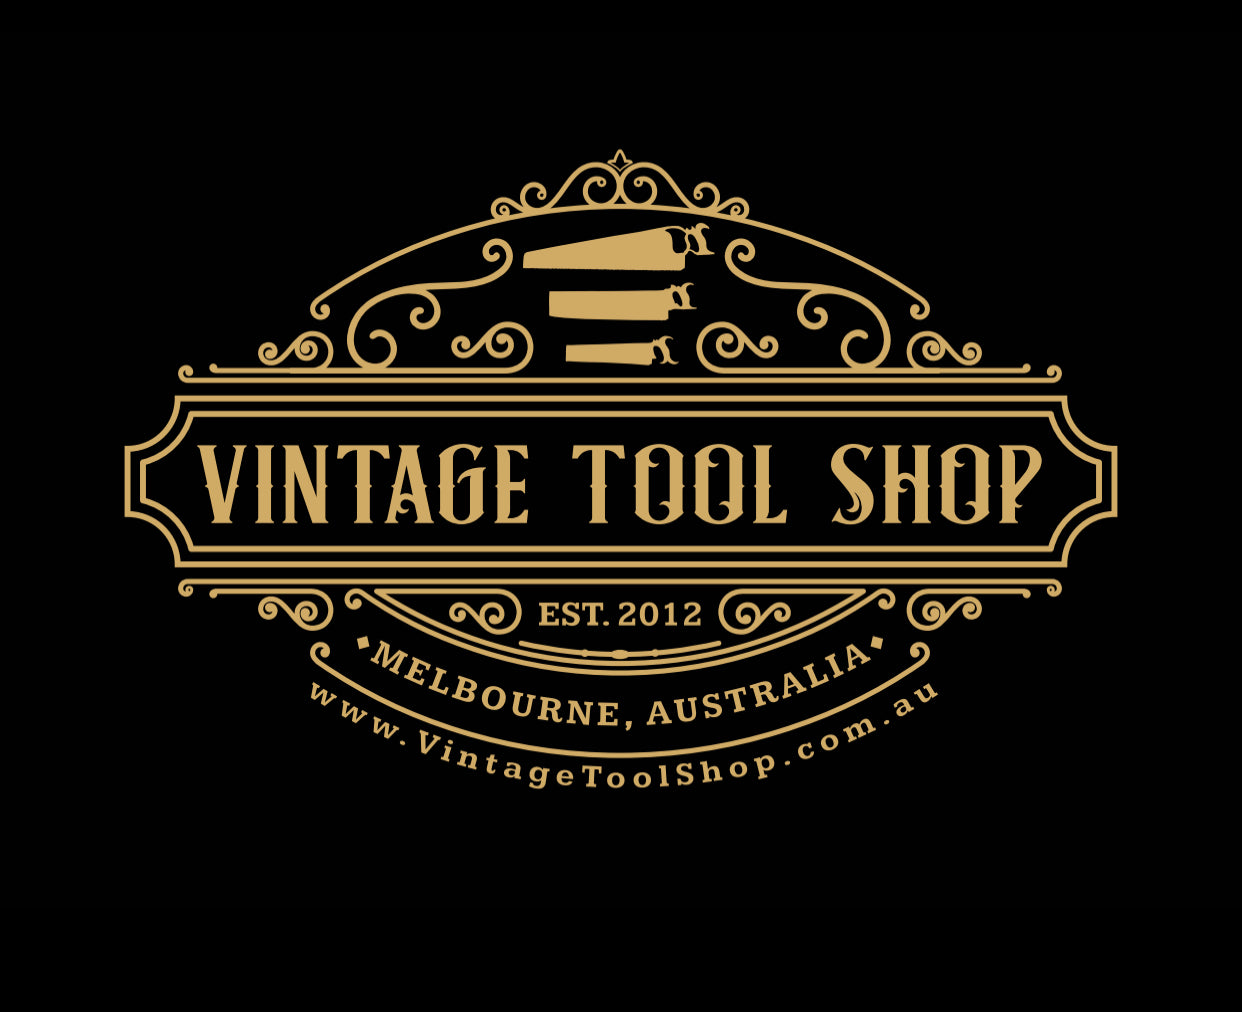 www.VintageToolShop.com.au vintage Tool Shop logo